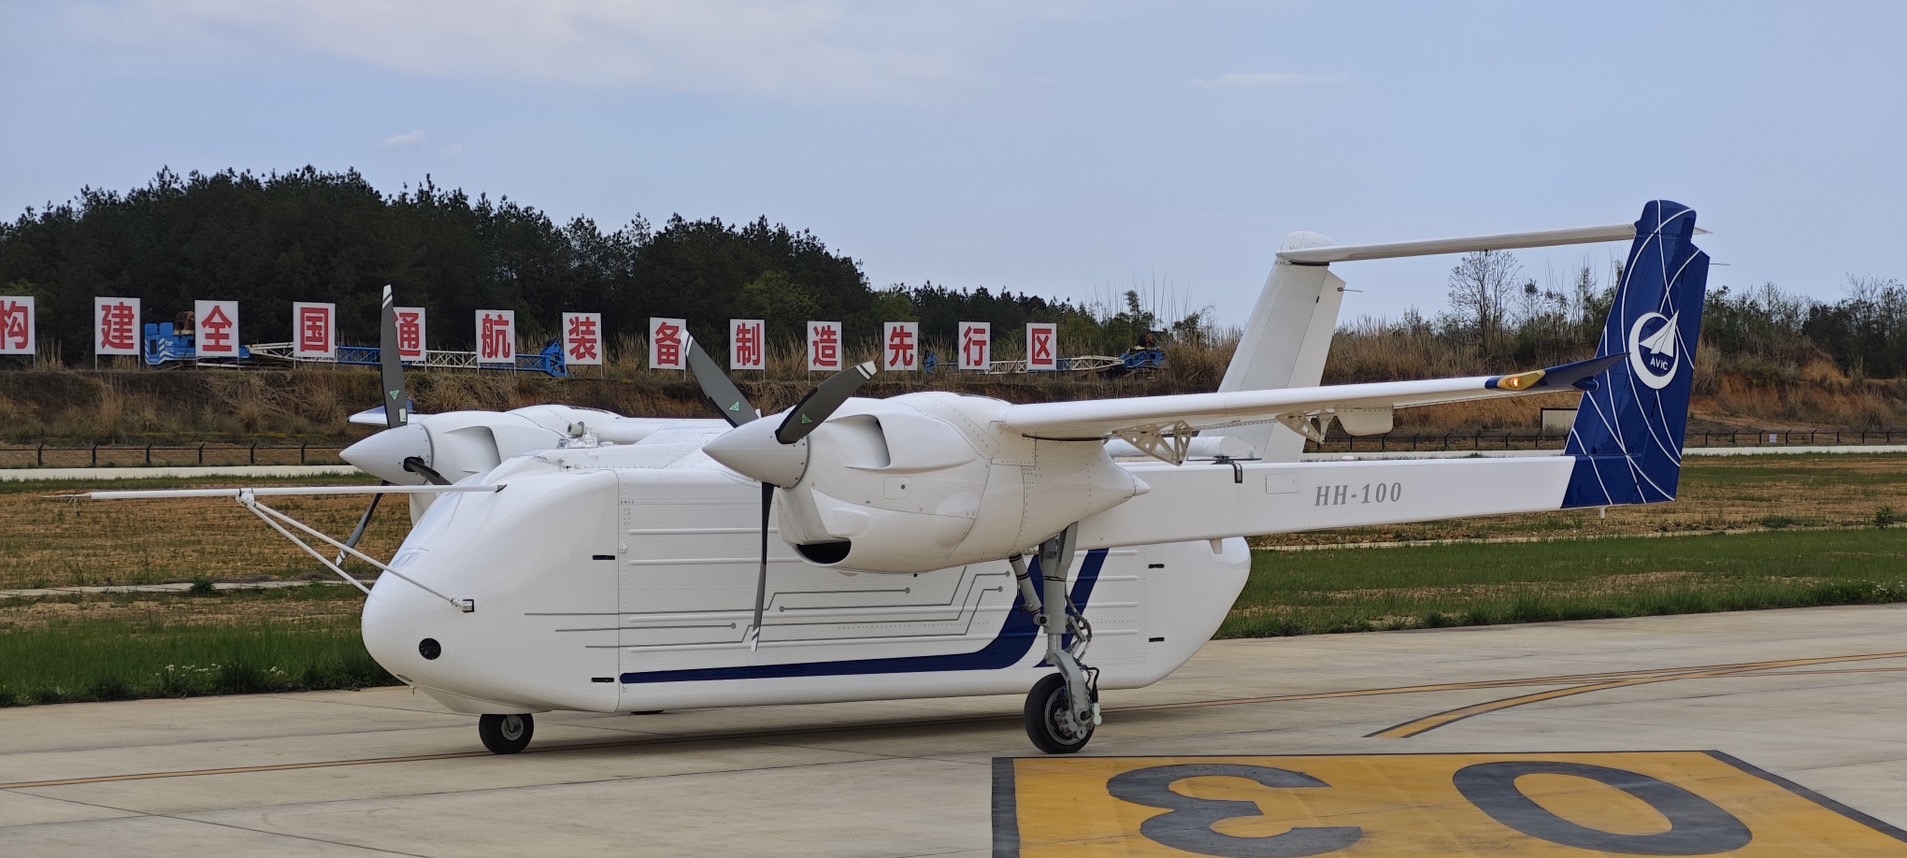 HH-100商用無人機完成驗證。 圖/取自中航西飛集團官網